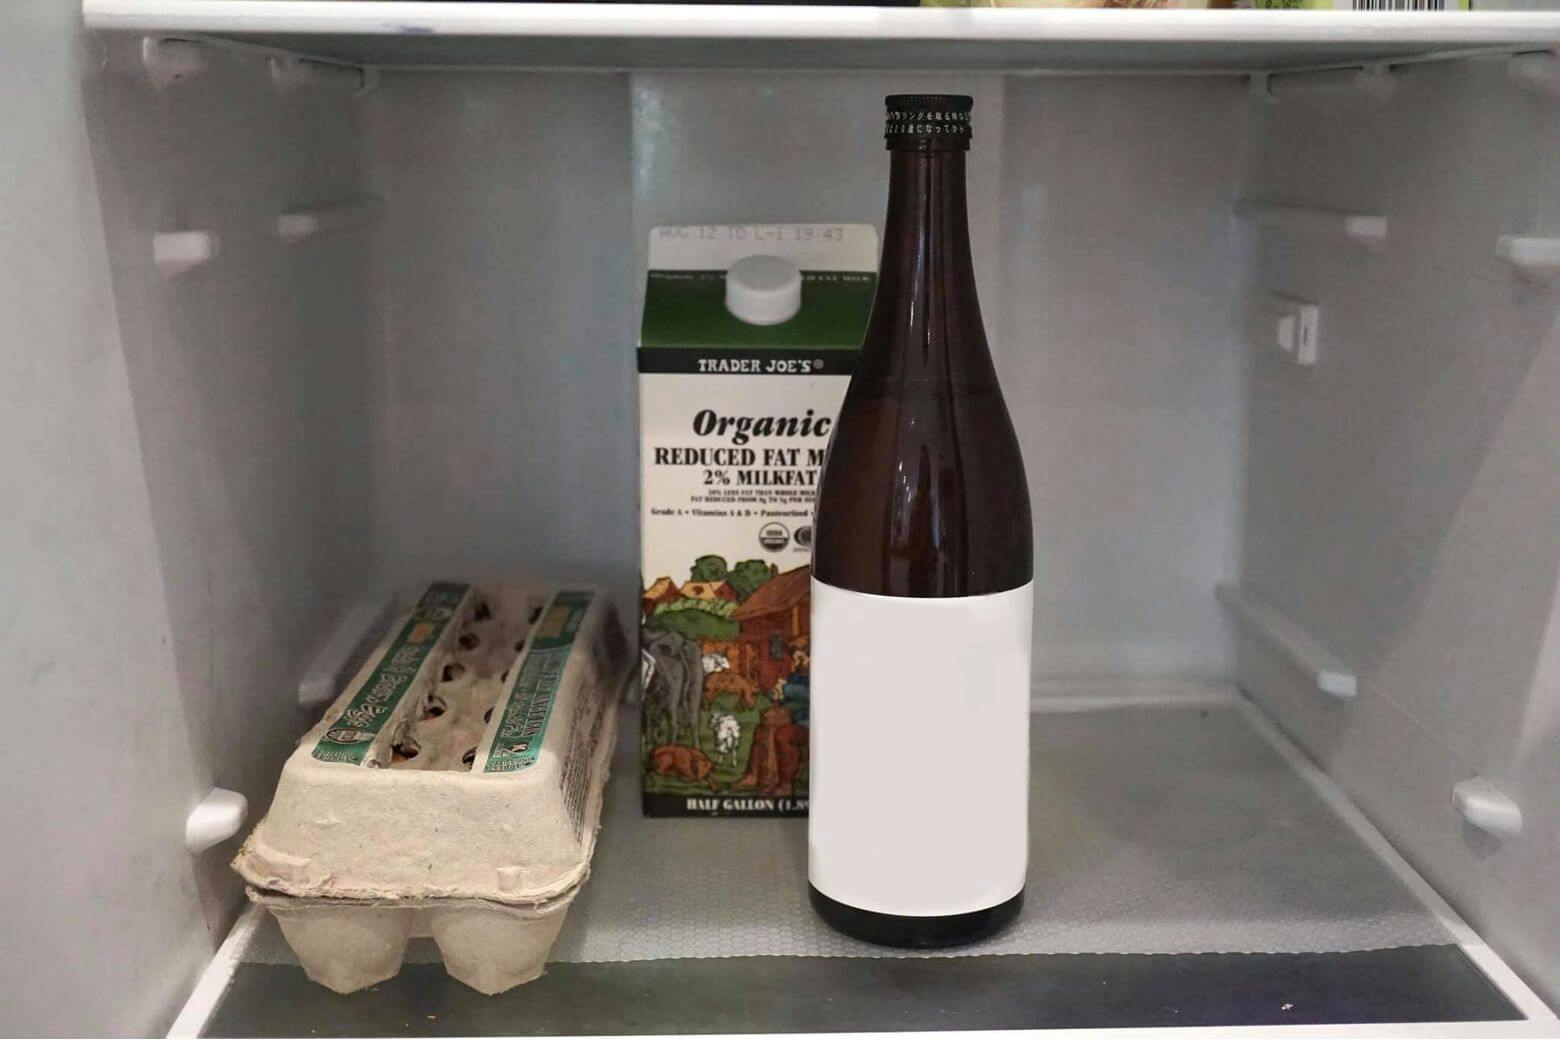 Sake stored in the fridge